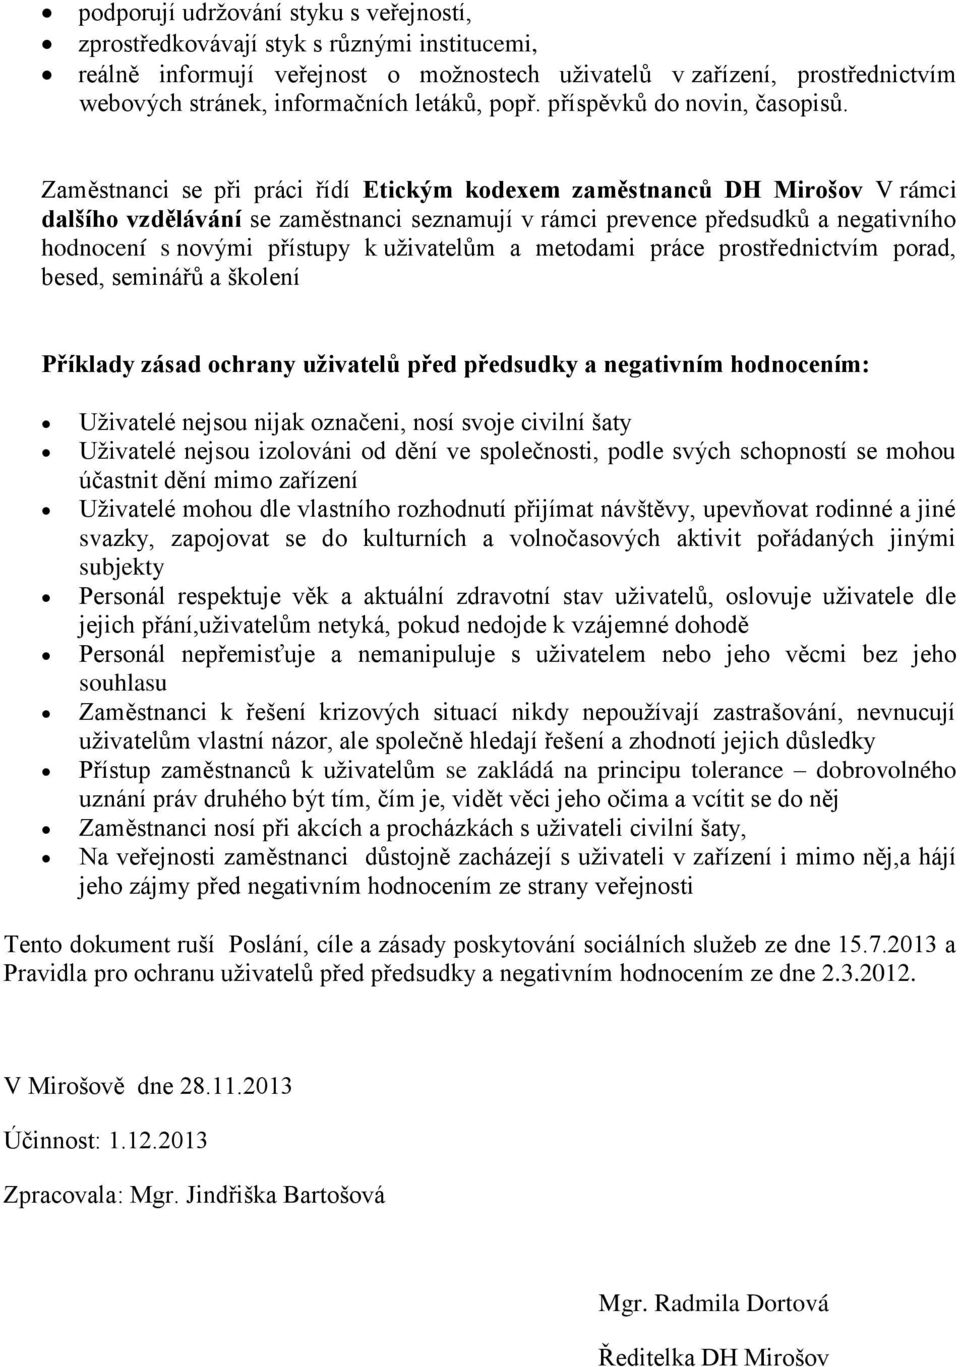 Zaměstnanci se při práci řídí Etickým kodexem zaměstnanců DH Mirošov V rámci dalšího vzdělávání se zaměstnanci seznamují v rámci prevence předsudků a negativního hodnocení s novými přístupy k